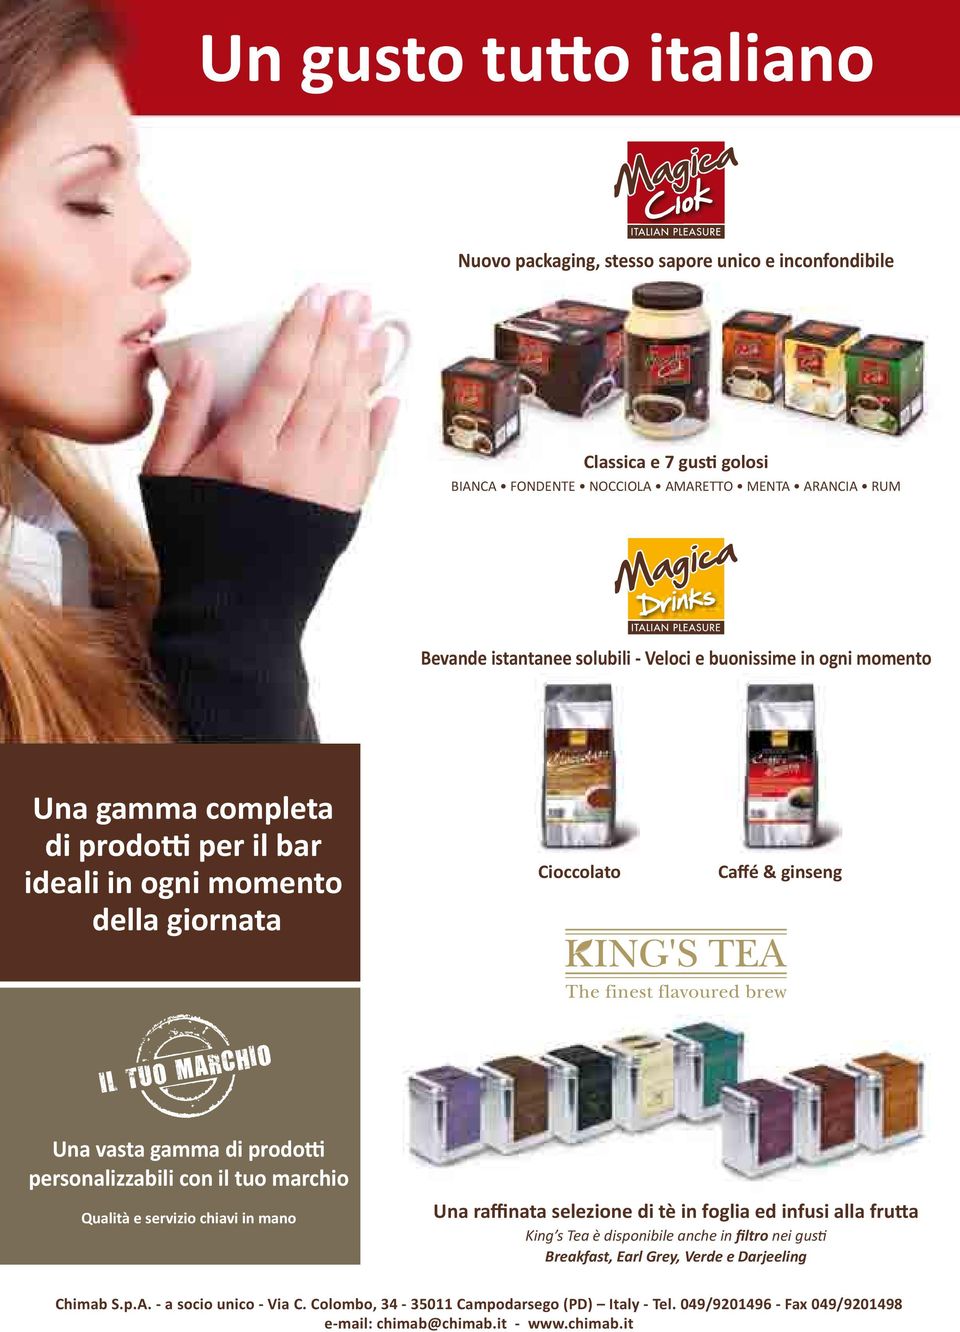 personalizzabili con il tuo marchio Qualità e servizio chiavi in mano Una raffinata selezione di tè in foglia ed infusi alla frutta King s Tea è disponibile anche in filtro nei gusti